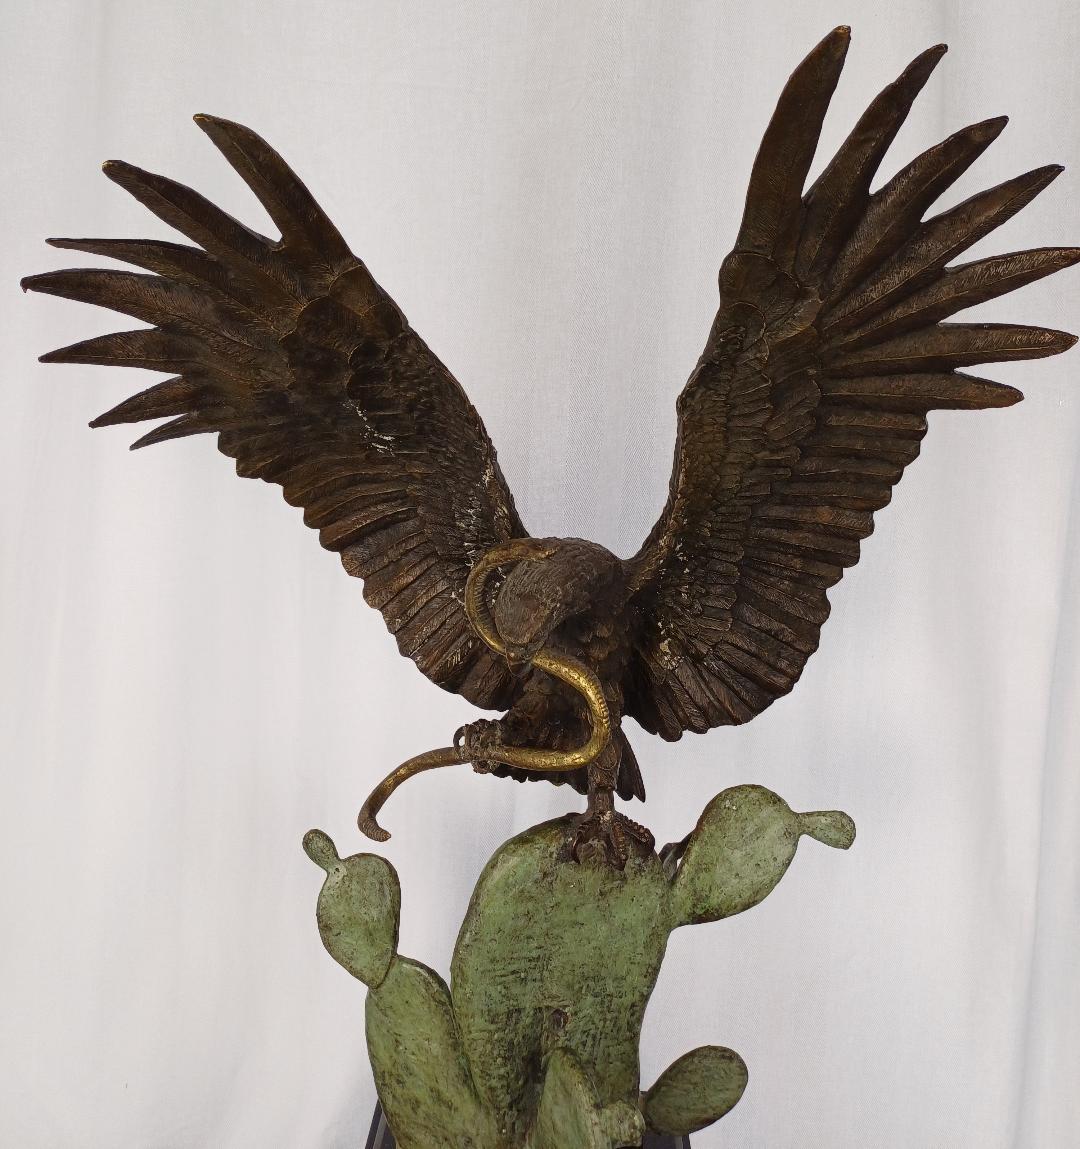 impressionnant bronze de grande taille représentant un aigle tenant  un serpent sur un cactus (symbole national du Mexique). Numéro 2 sur 5 exemples réalisés  par Alberto Estrada. Bronze sur socle en marbre noir.